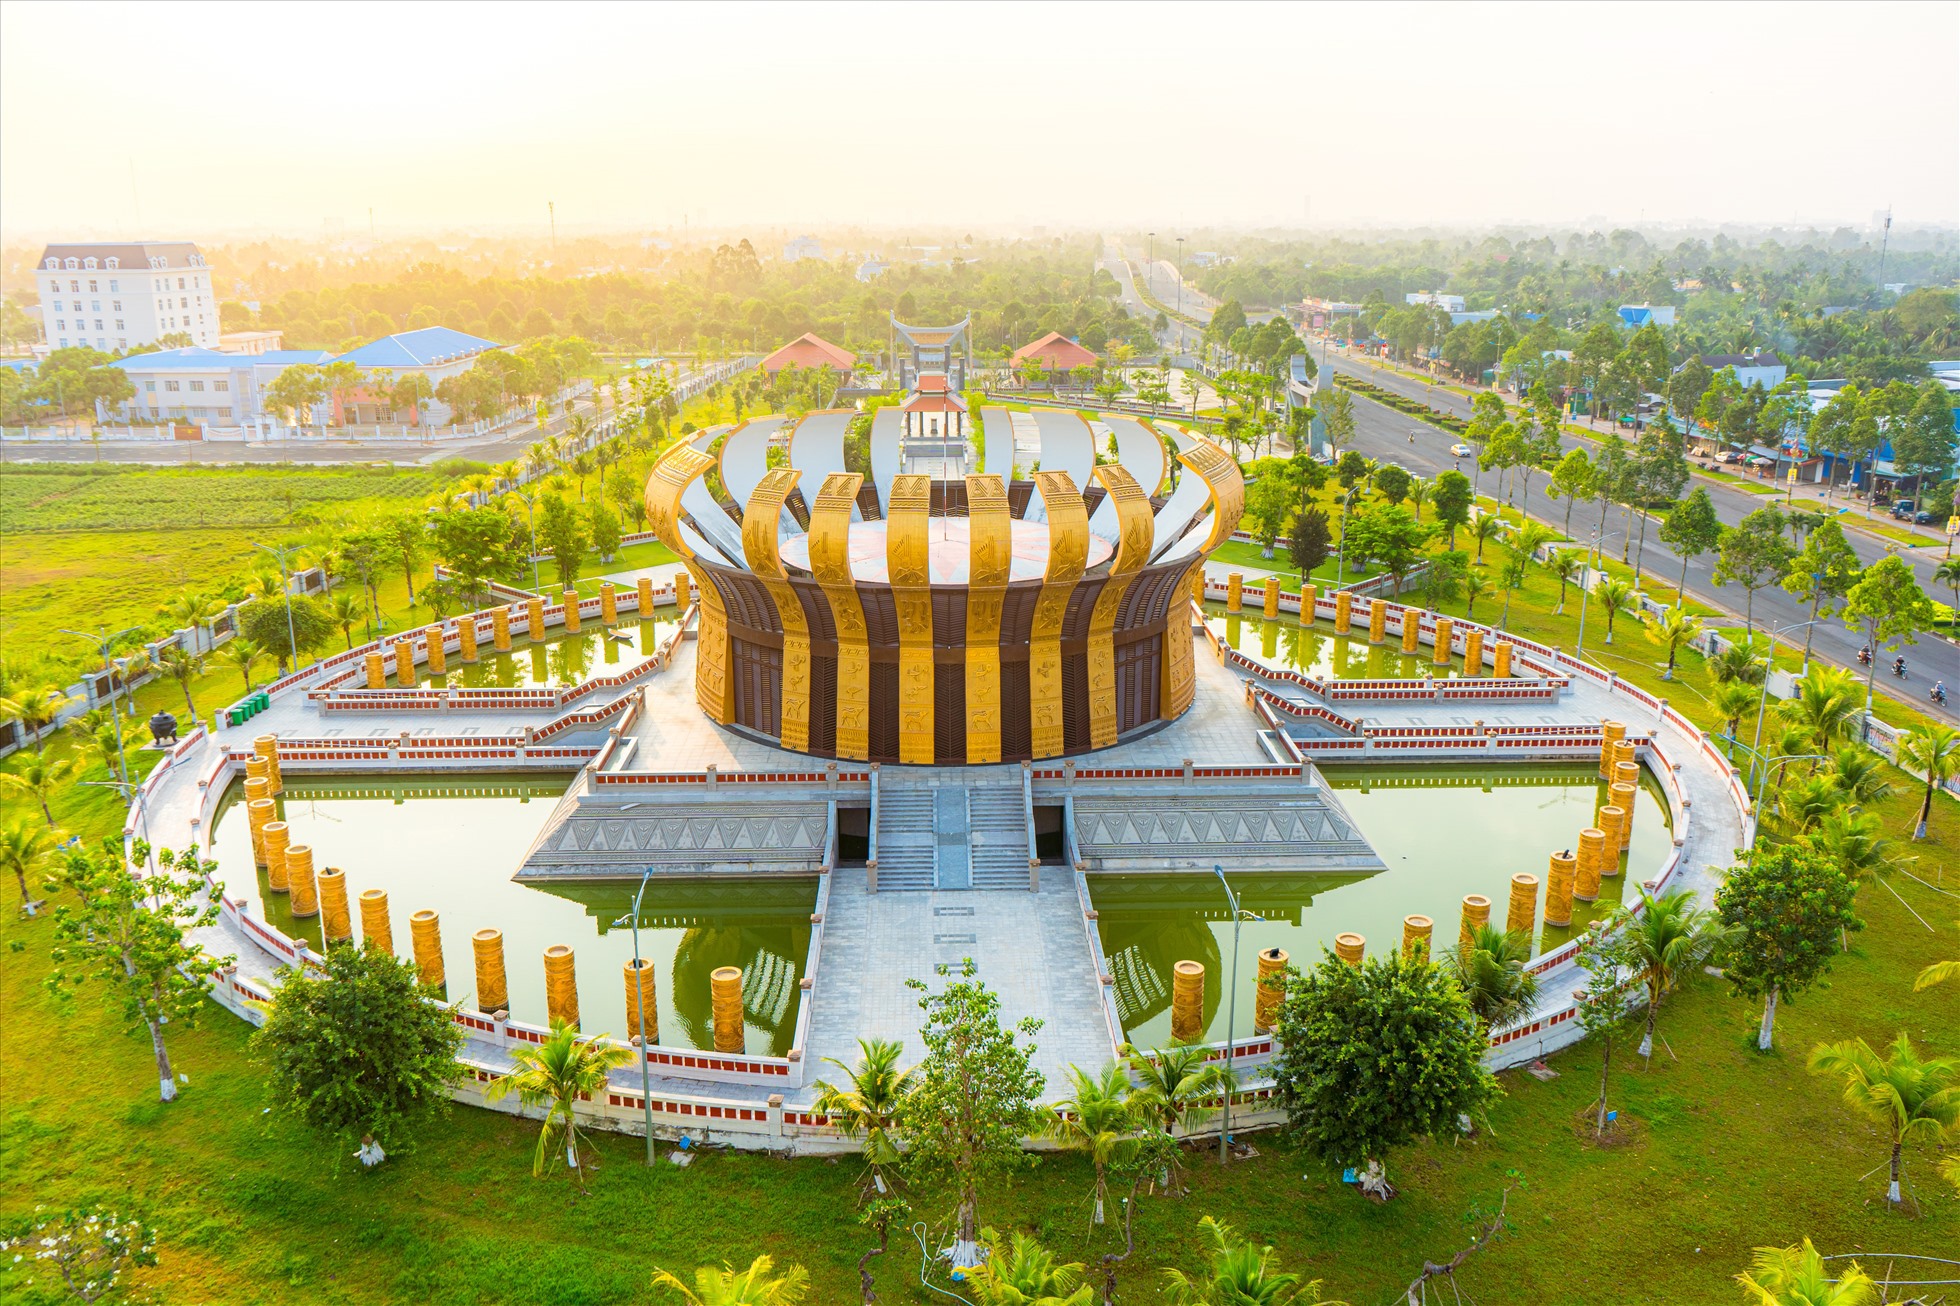 Đền thờ Vua Hùng là công trình văn hóa trọng điểm, có ý nghĩa lịch sử quan trọng của TP Cần Thơ và quốc gia được khởi công xây dựng năm 2019, khánh thành vào tháng 4.2022. Tổng mức đầu tư hơn 129 tỉ đồng từ nguồn xã hội hóa, với diện tích rộng hơn 39.000m2.